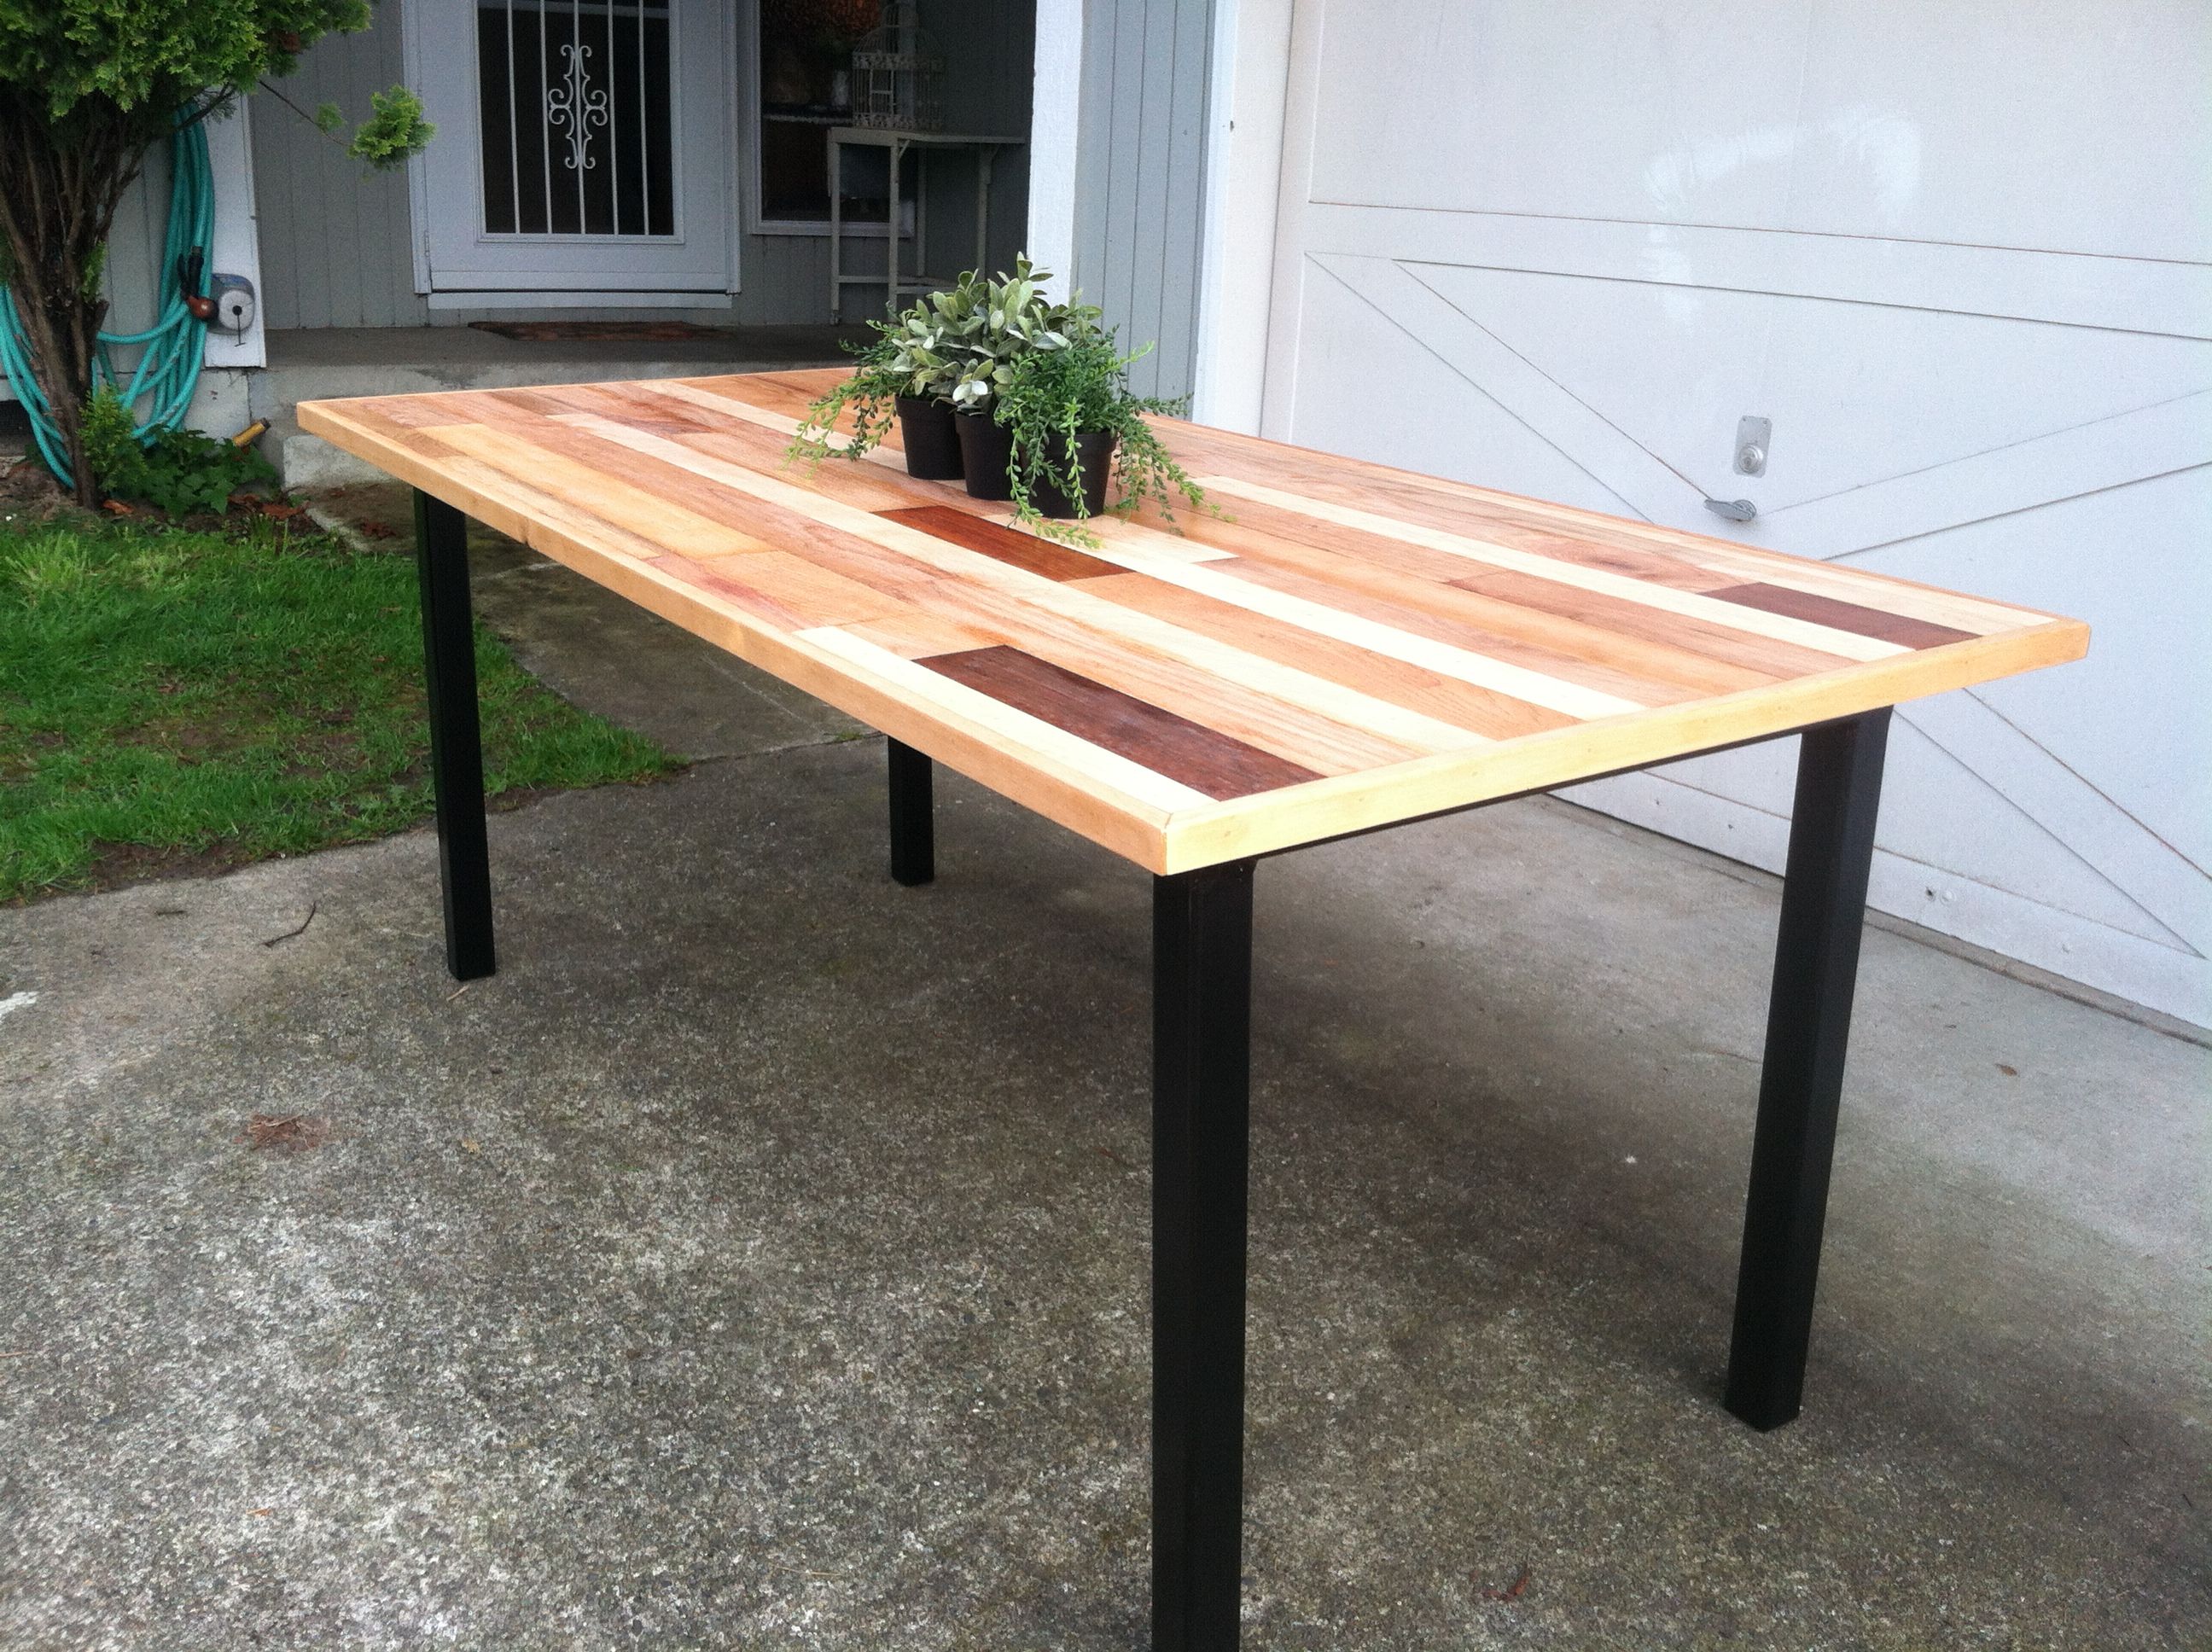 hardwood floor match kitchen table